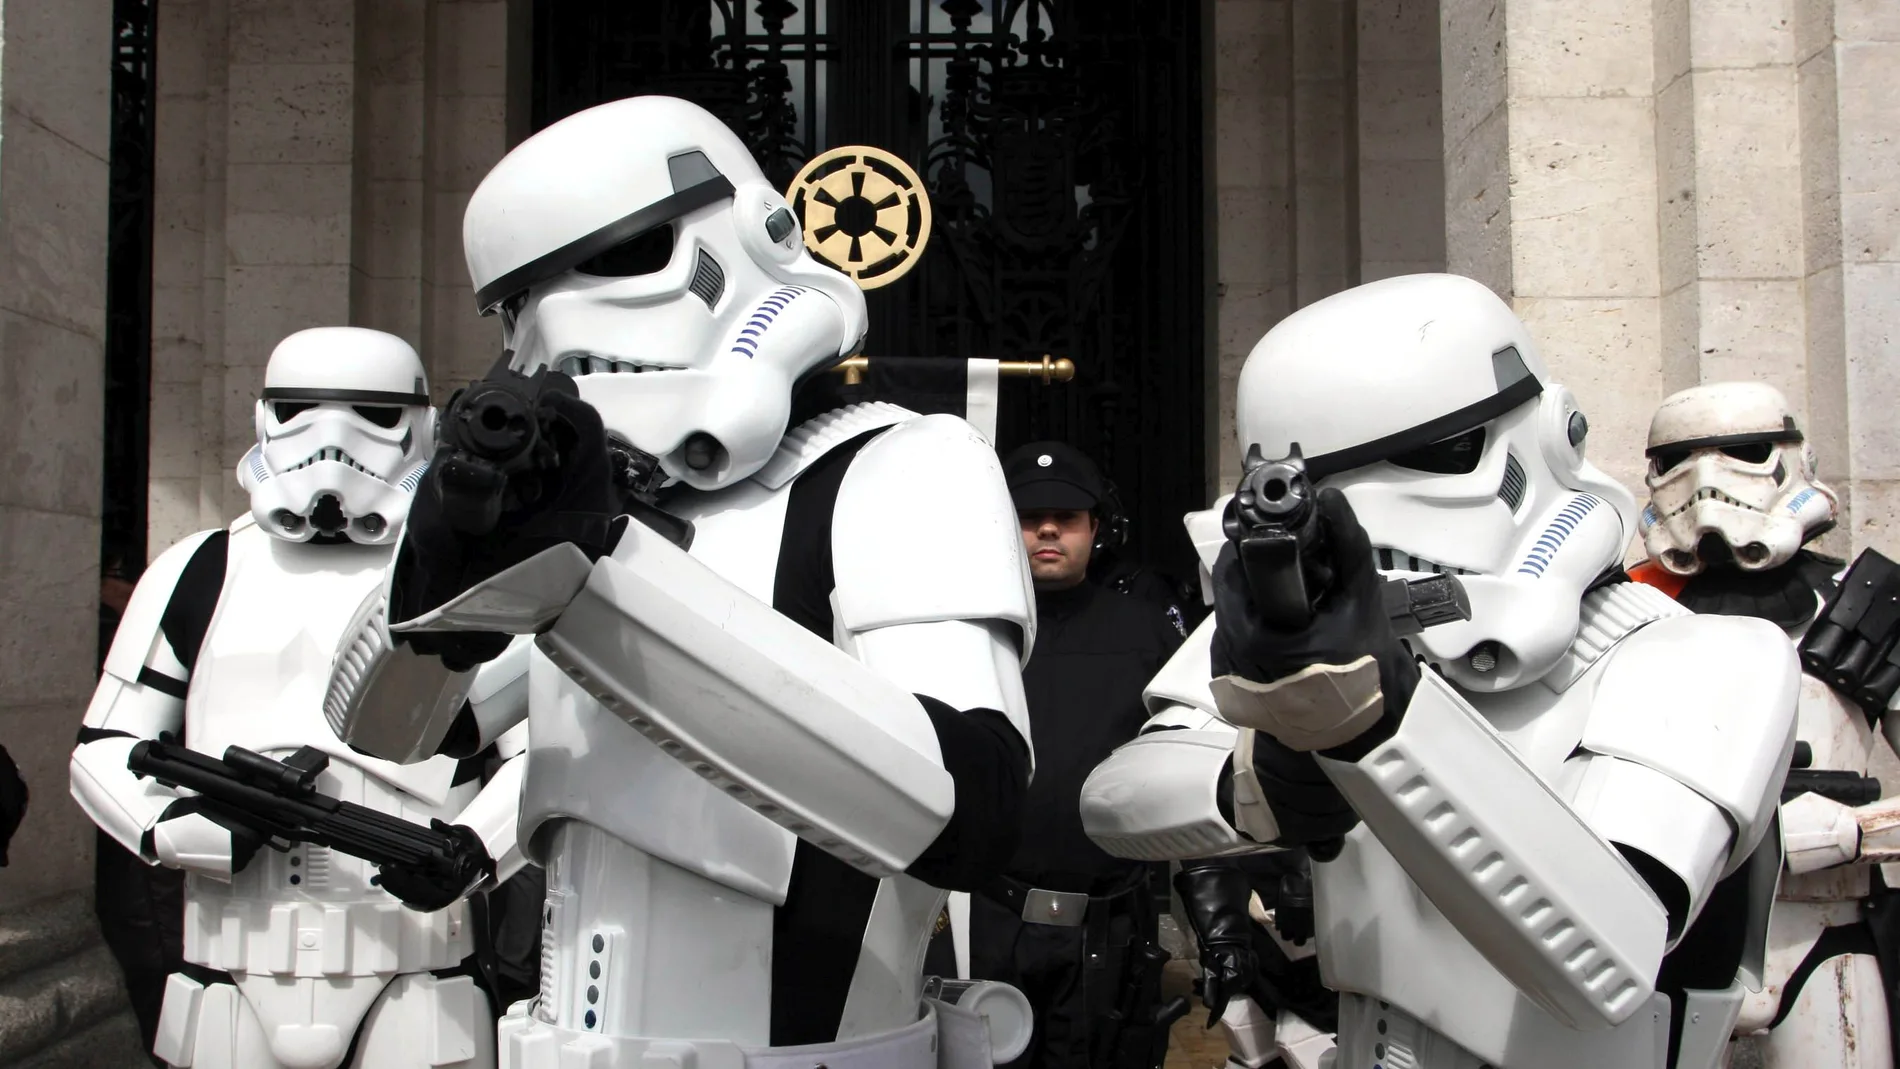 Personas disfrazadas de la Legión 501 de Star Wars durante un desfile Cosplay del Salón del Cómic y el Manga de Valladolid